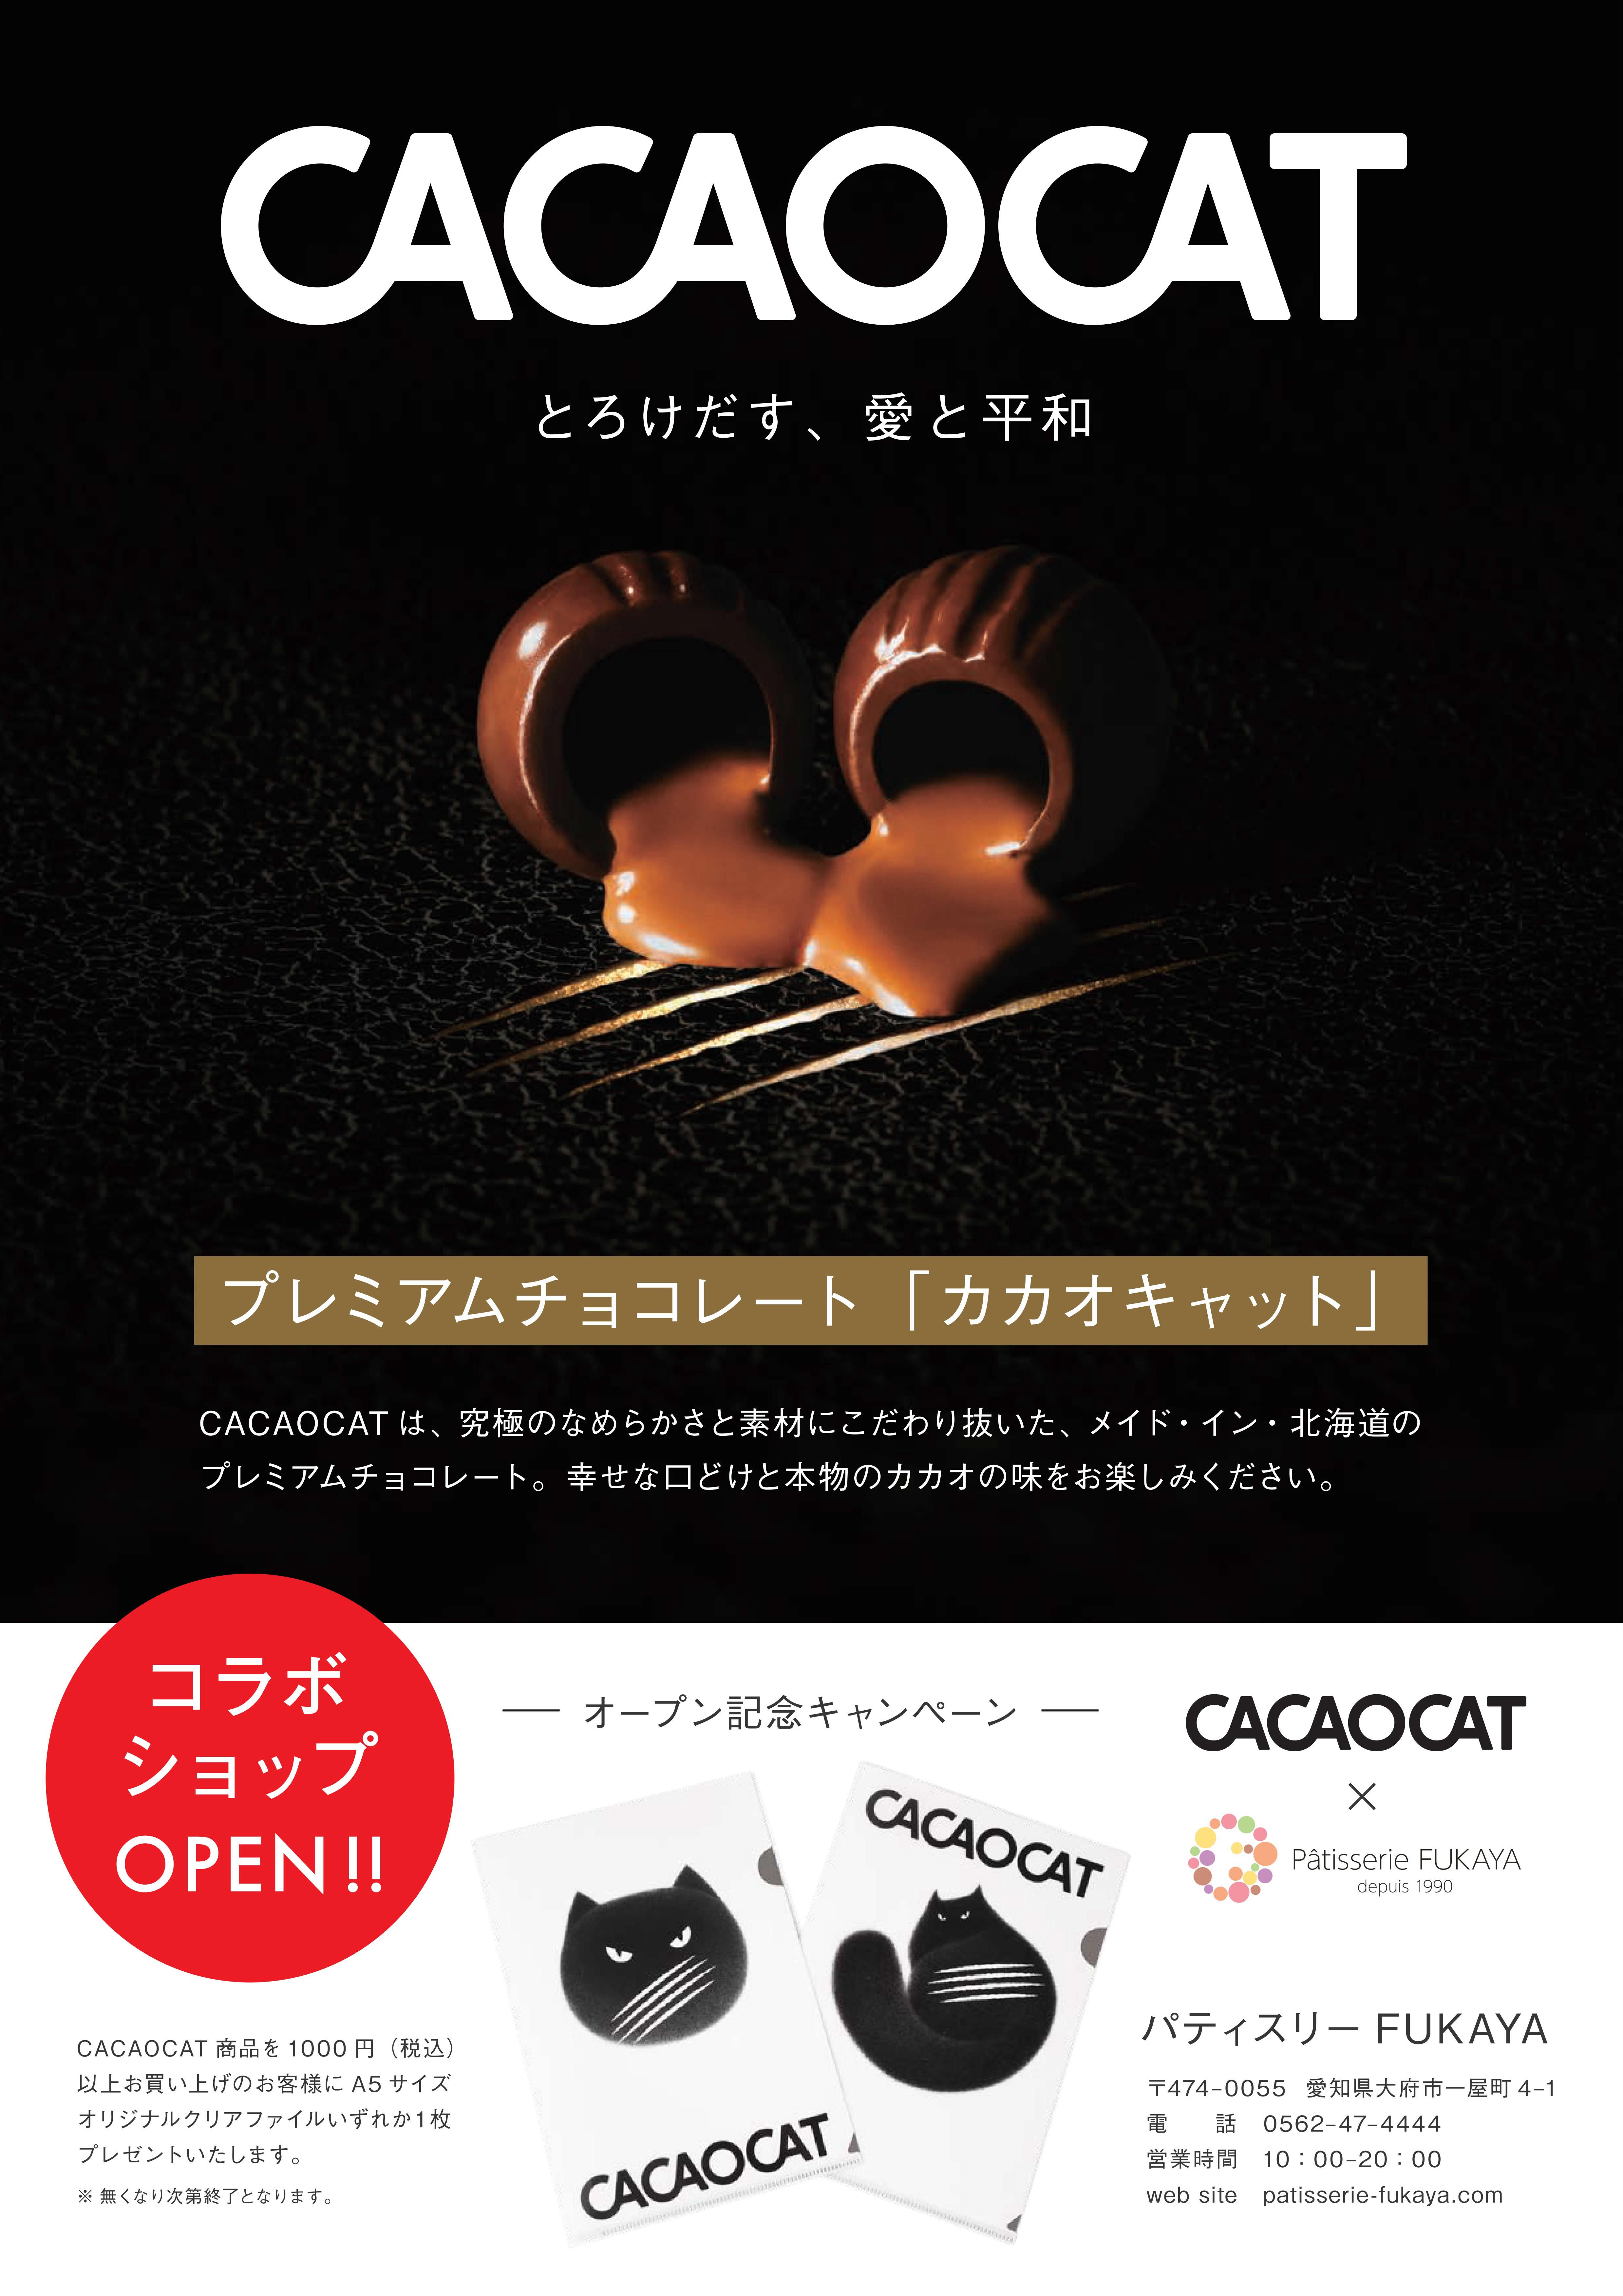 大府本店 チョコレート専門店 Cacao Cat オープン パティスリーfukaya